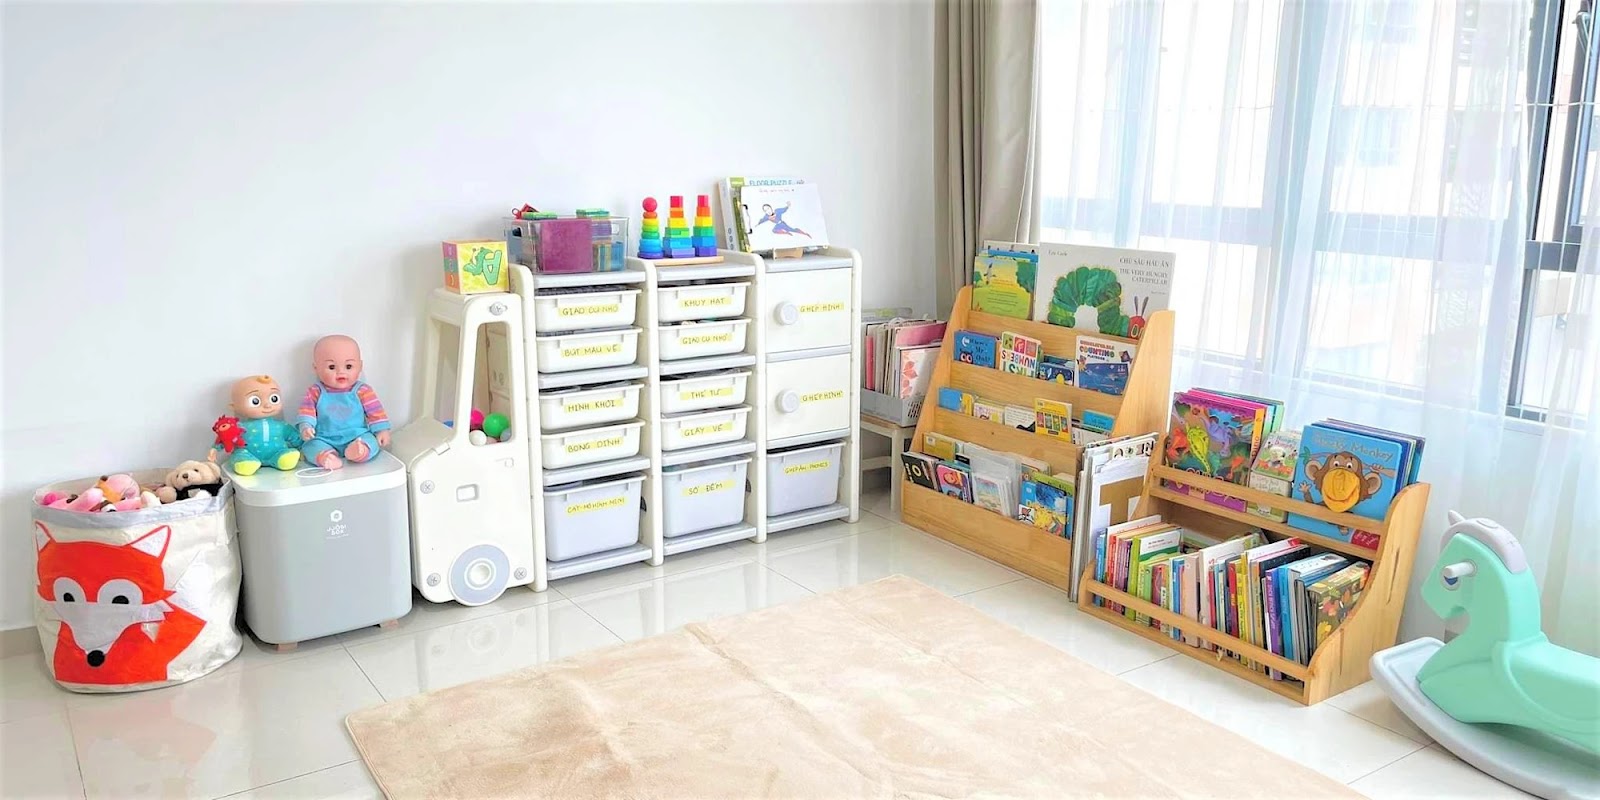 Vệ sinh đồ chơi và đồ trang trí phòng cho bé thường xuyên để bảo vệ đồ đạc cũng như bé của bạn